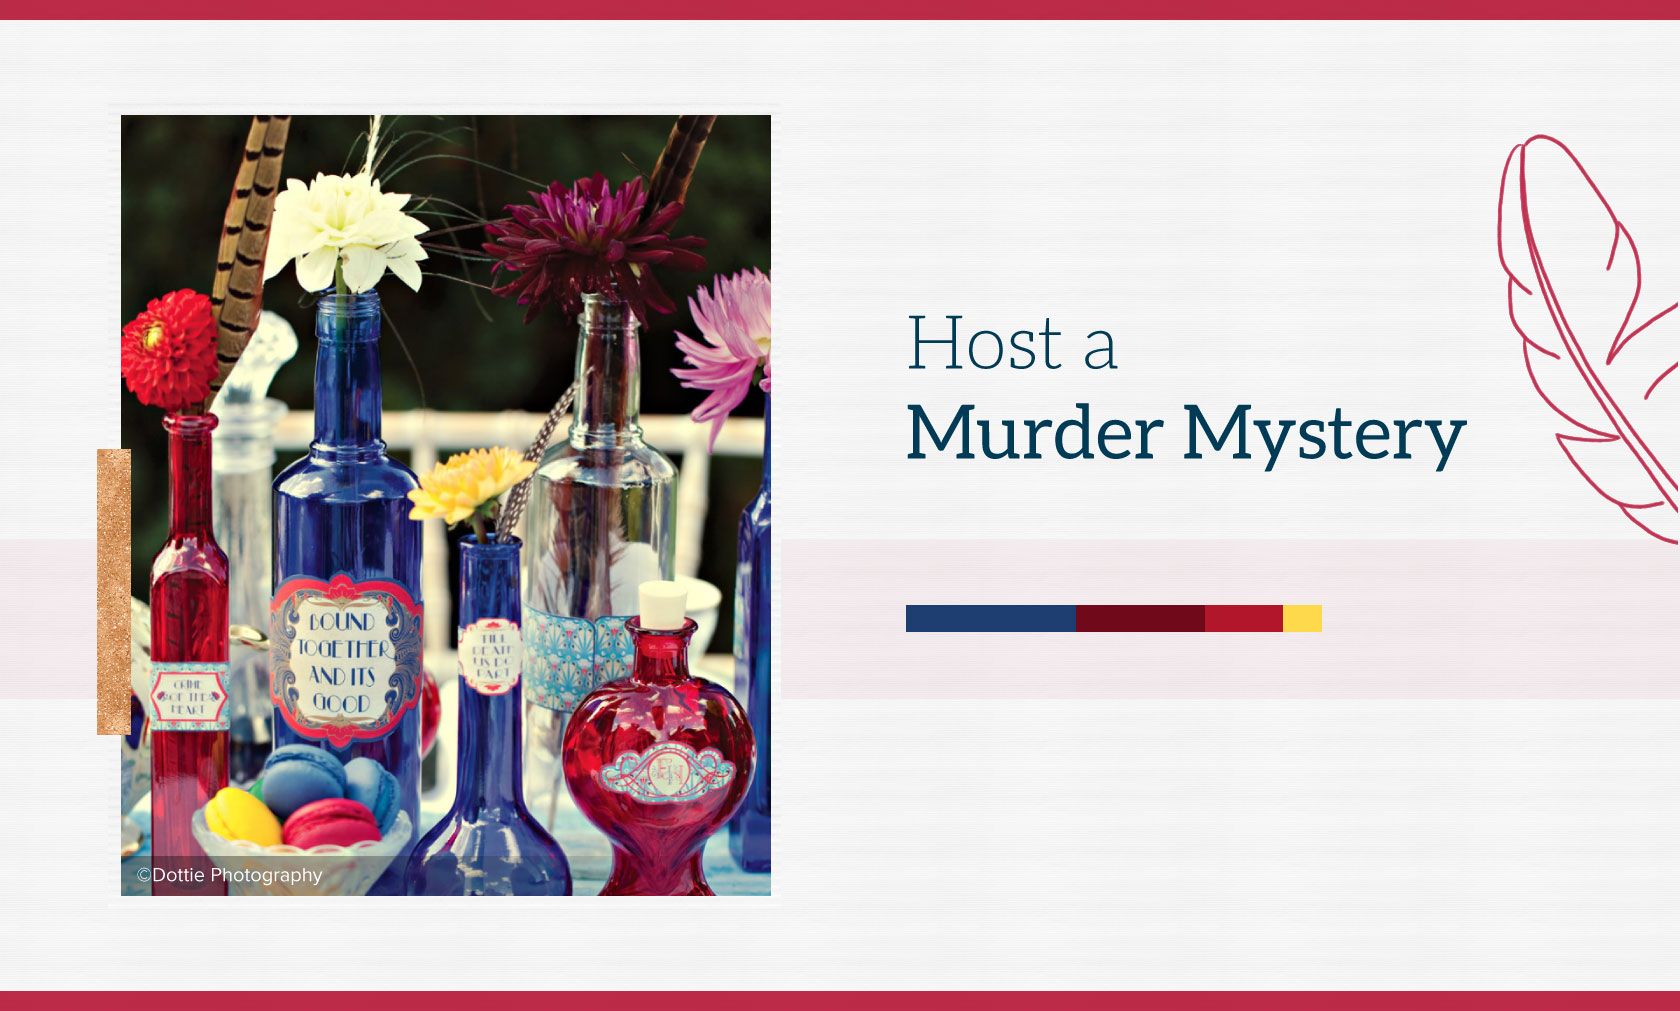 Host a Murder Mystery